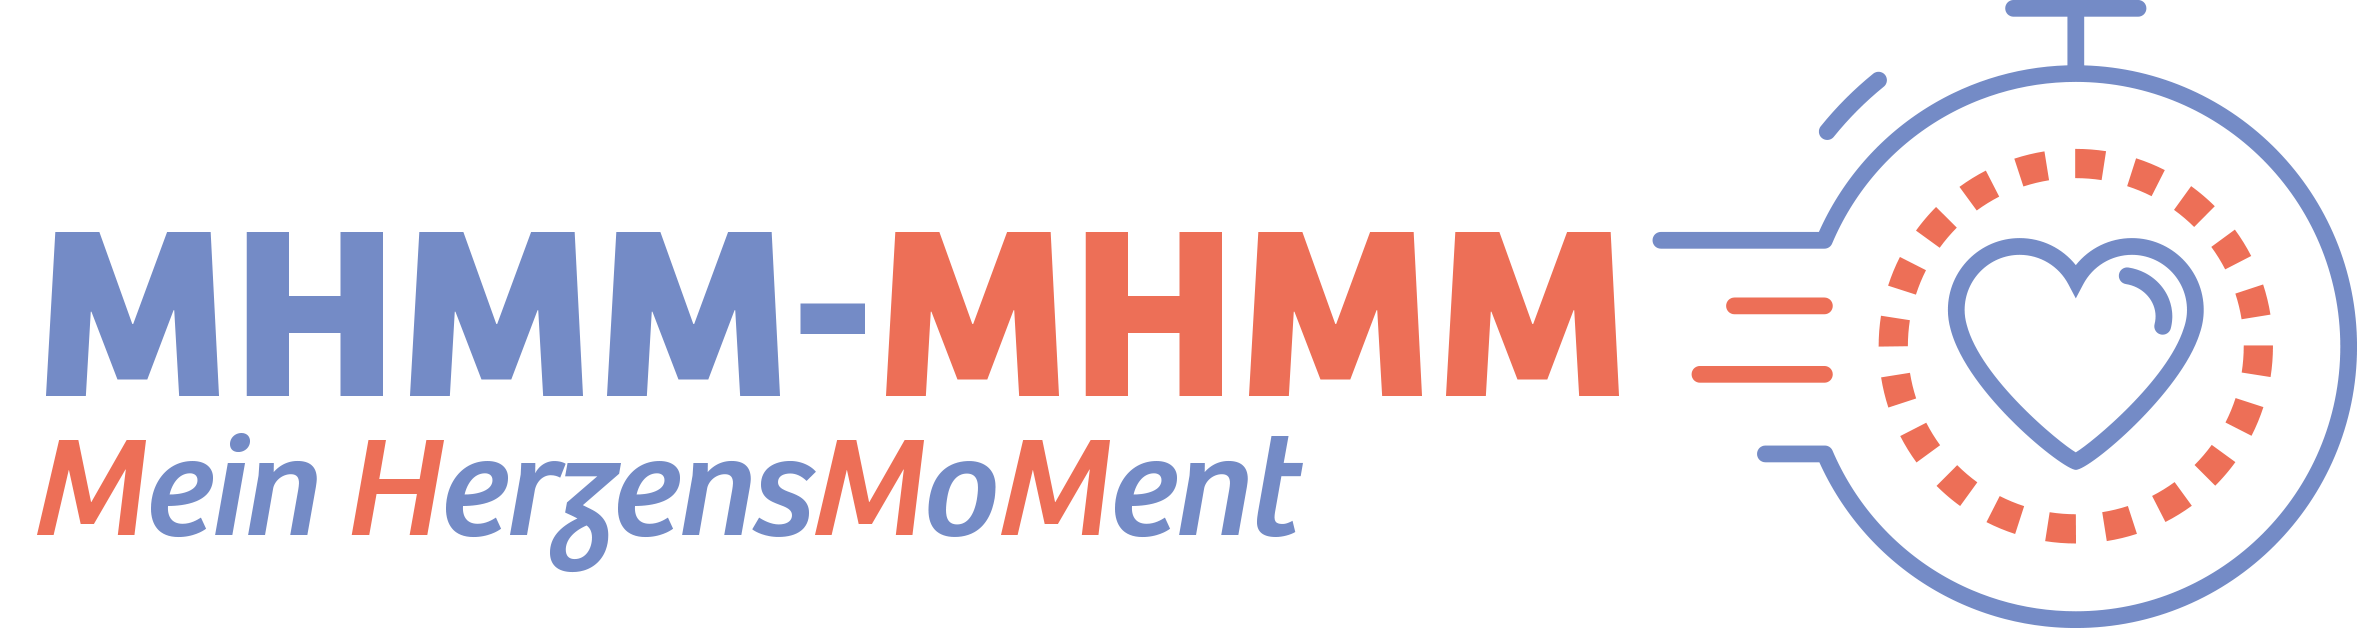 Logo Miam miam DE